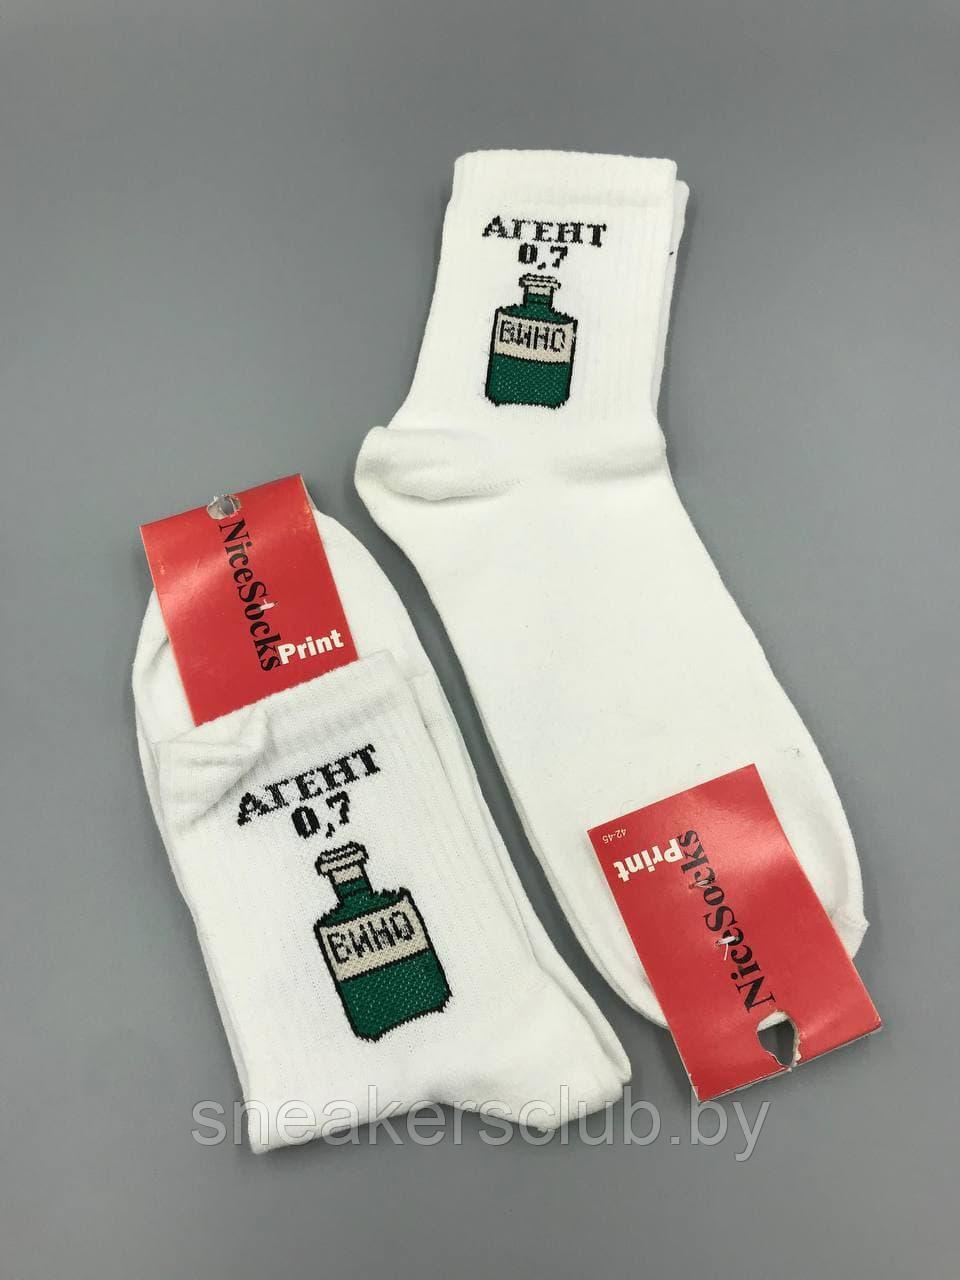 Белые носки с принтом "Агент 0,7"/ размер 42-45/ длинные носки/ носки с резинкой